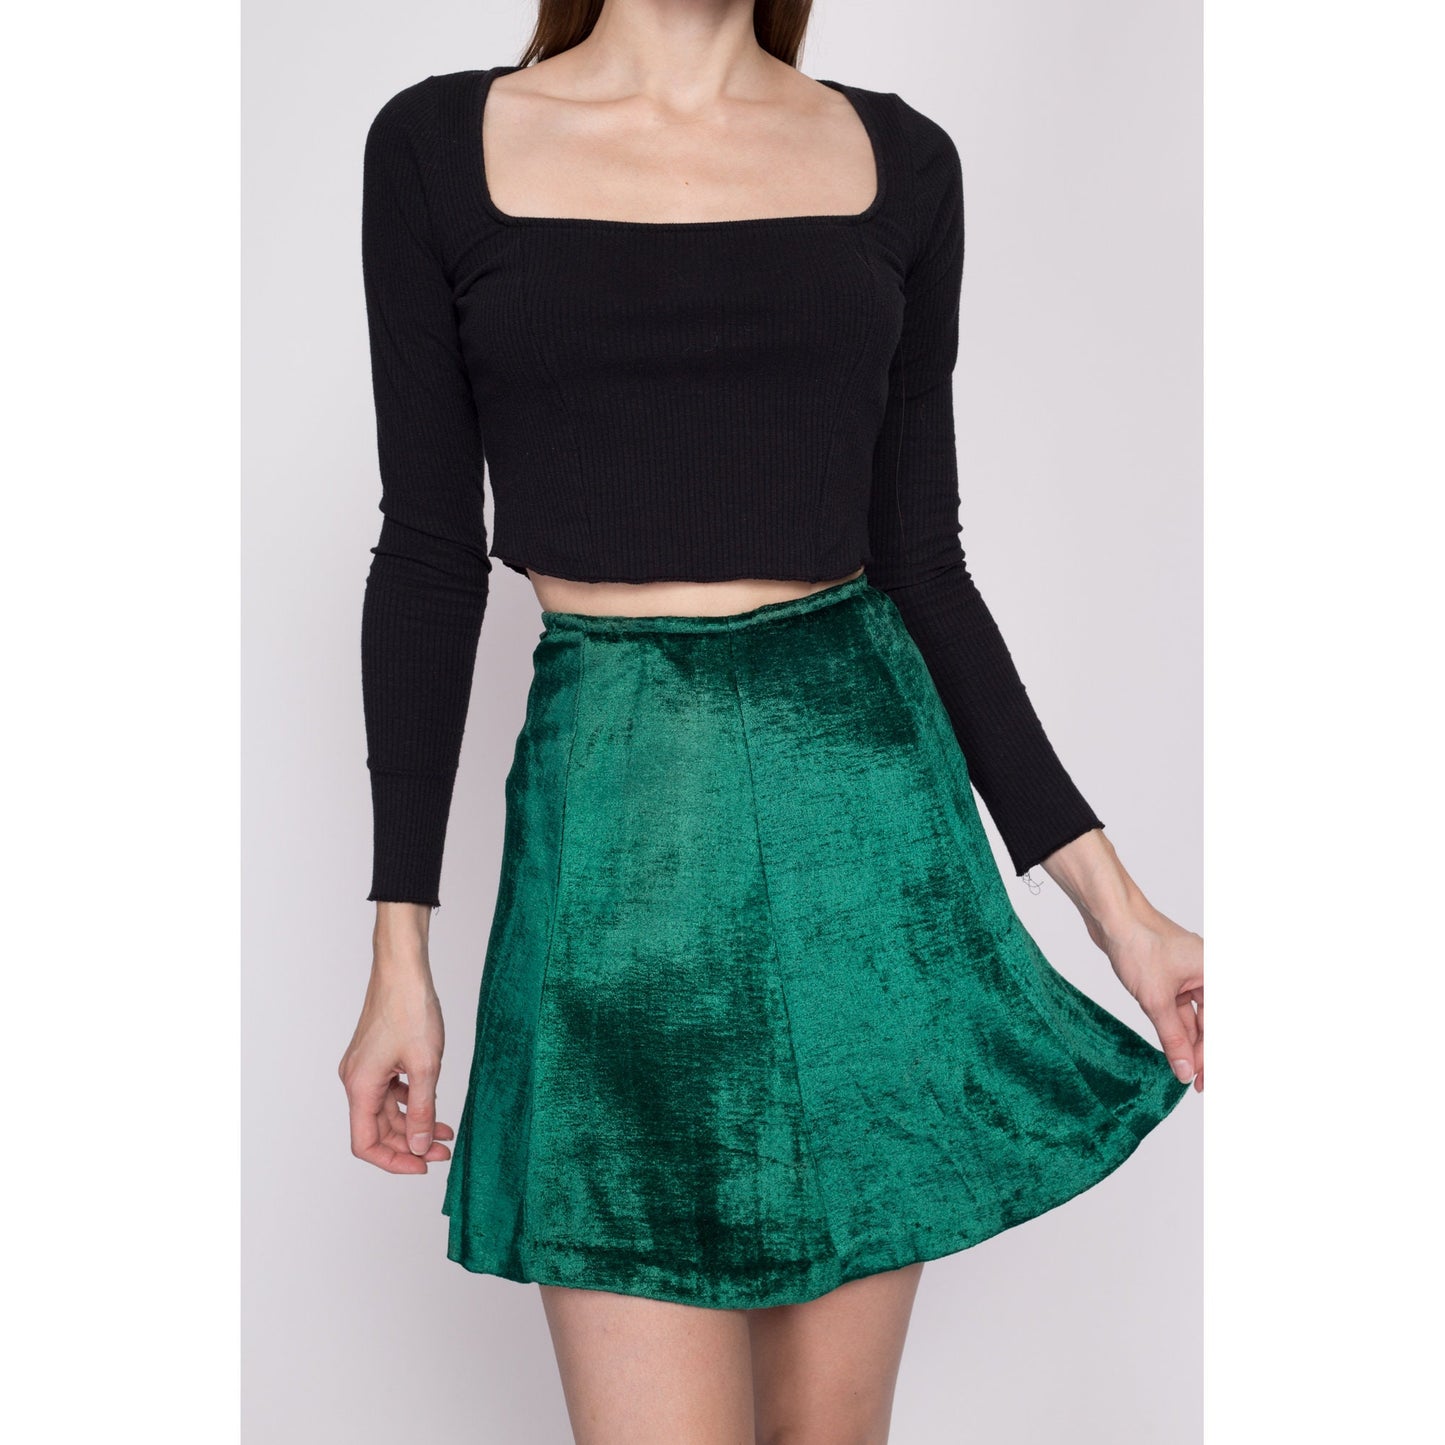 Small 60s Green Velvet Mini Skirt 26" | Vintage Jewel Tone High Waisted A Line Flowy Skater Miniskirt